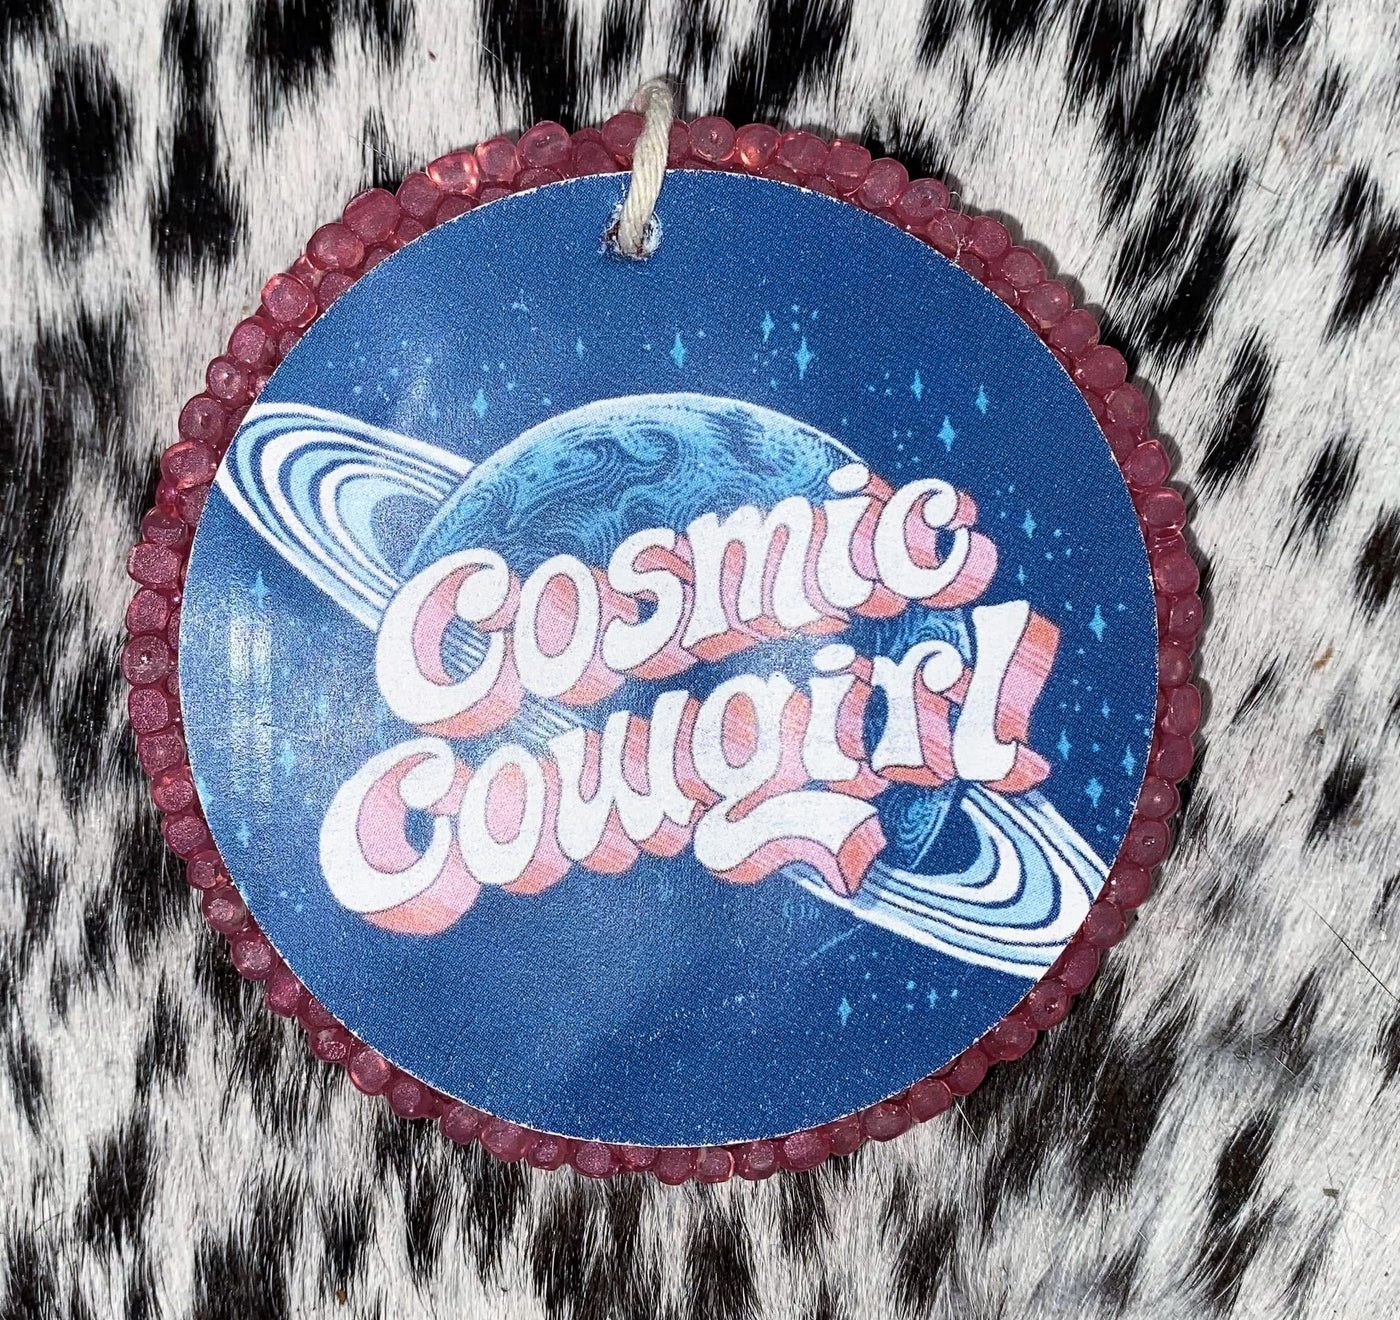 Cosmic Cowgirl Freshie